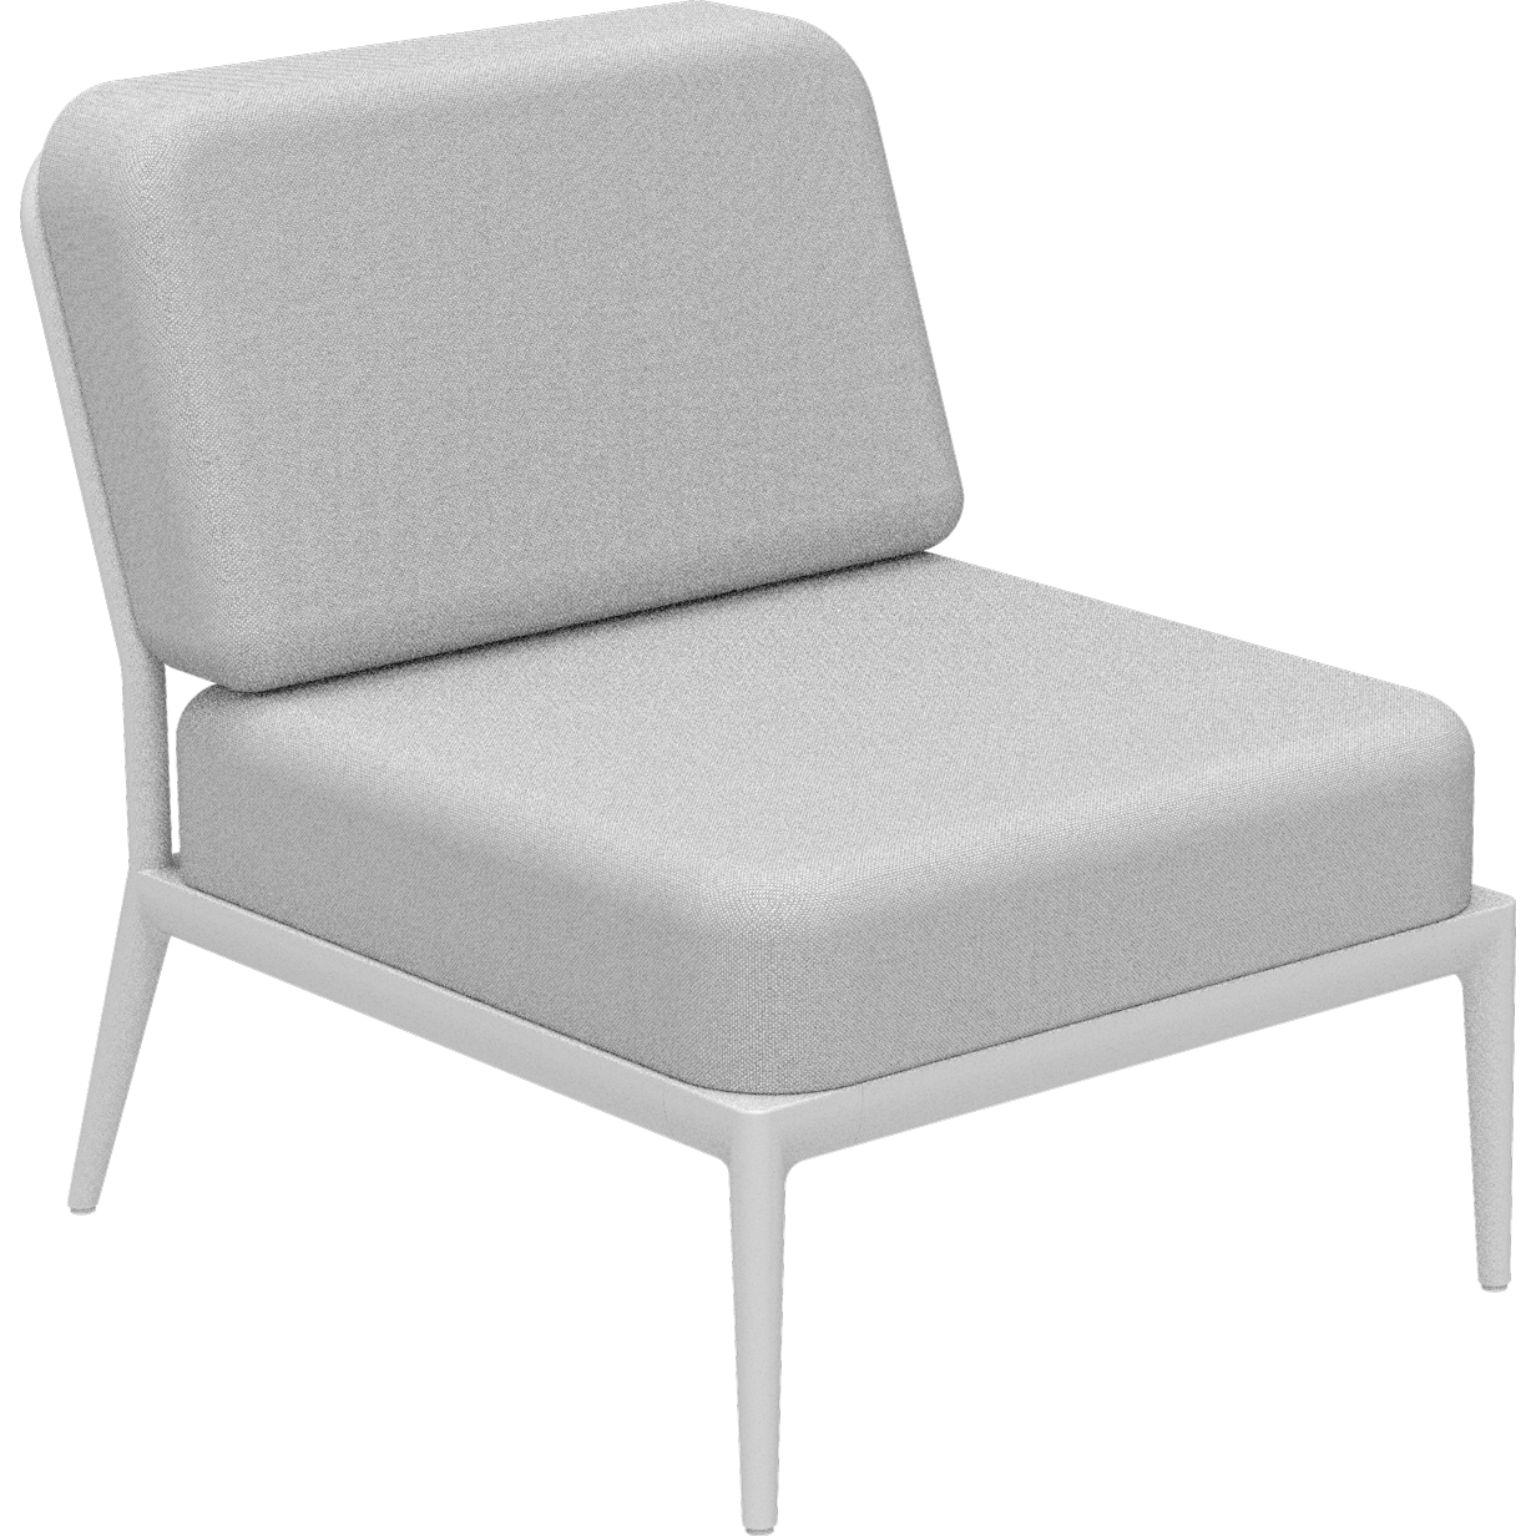 Nature White zentrales modulares sofa von MOWEE
Abmessungen: T83 x B68 x H81 cm (Sitzhöhe 42 cm).
MATERIAL: Aluminium und Polstermaterial.
Gewicht: 17 kg.
Auch in verschiedenen Farben und Ausführungen erhältlich.

Eine Collection'S, die durch ihre